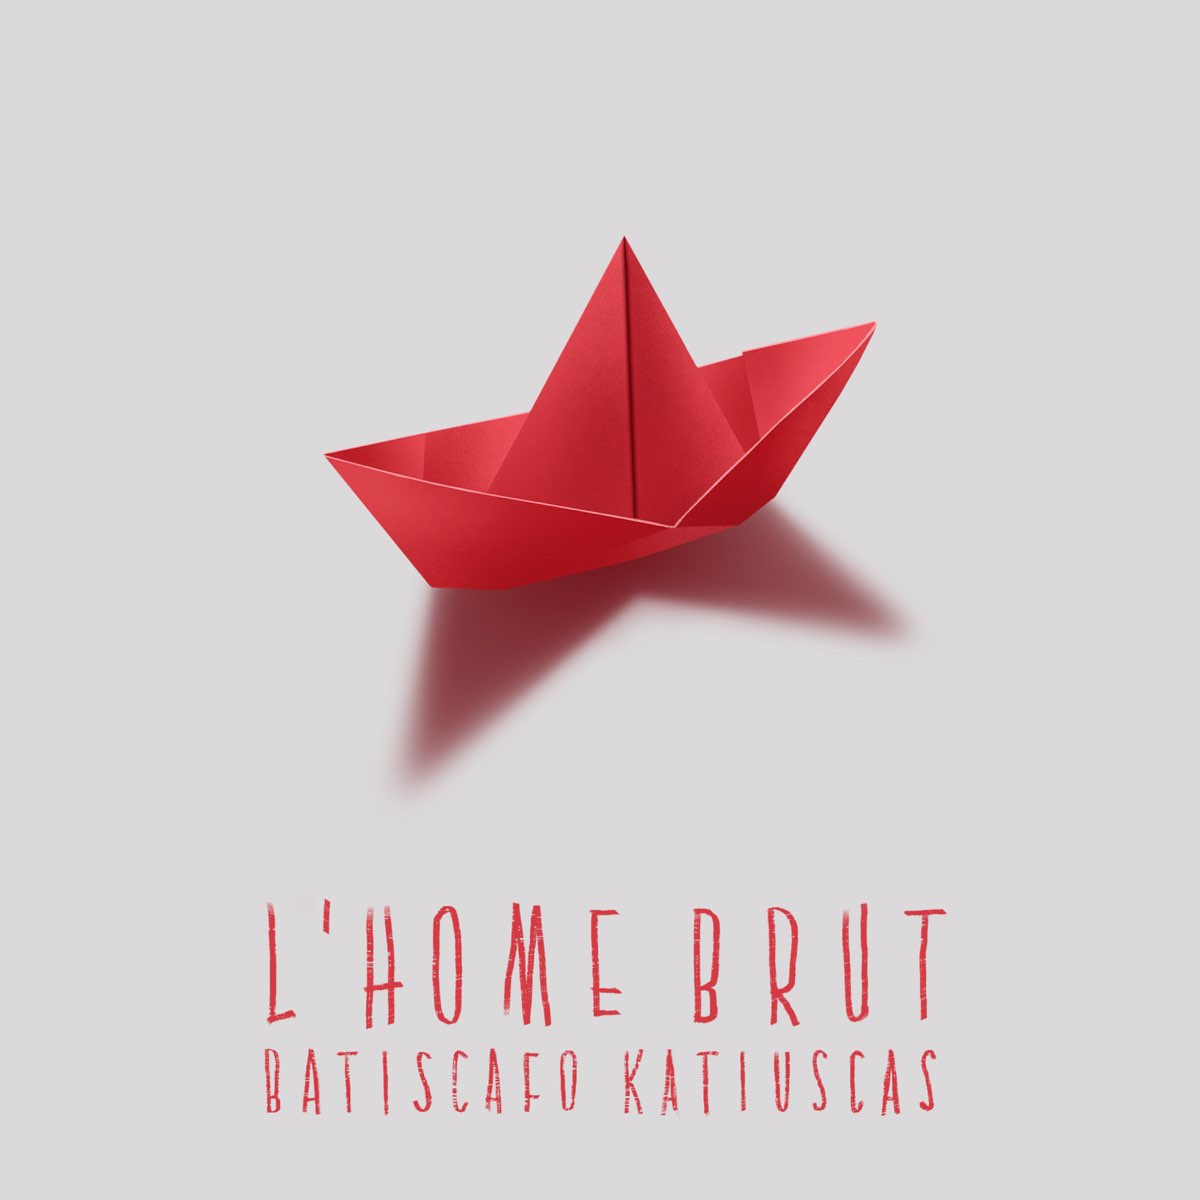 Stream Batiscafo Katiuscas by L'Home Brut